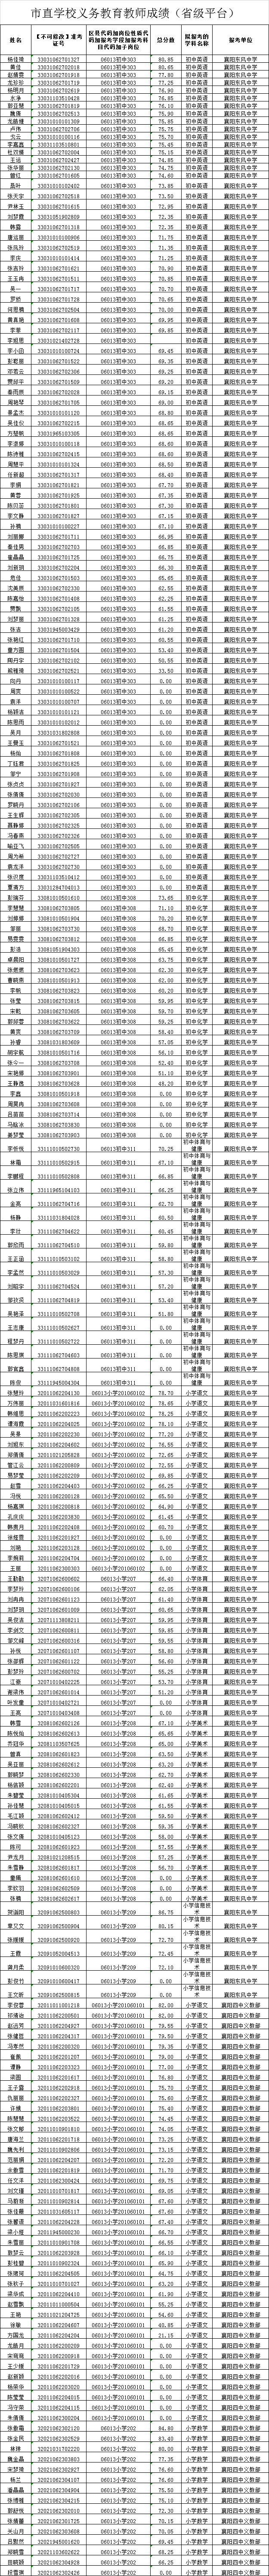 2021年襄阳市市直学校公开招聘笔试成绩图3